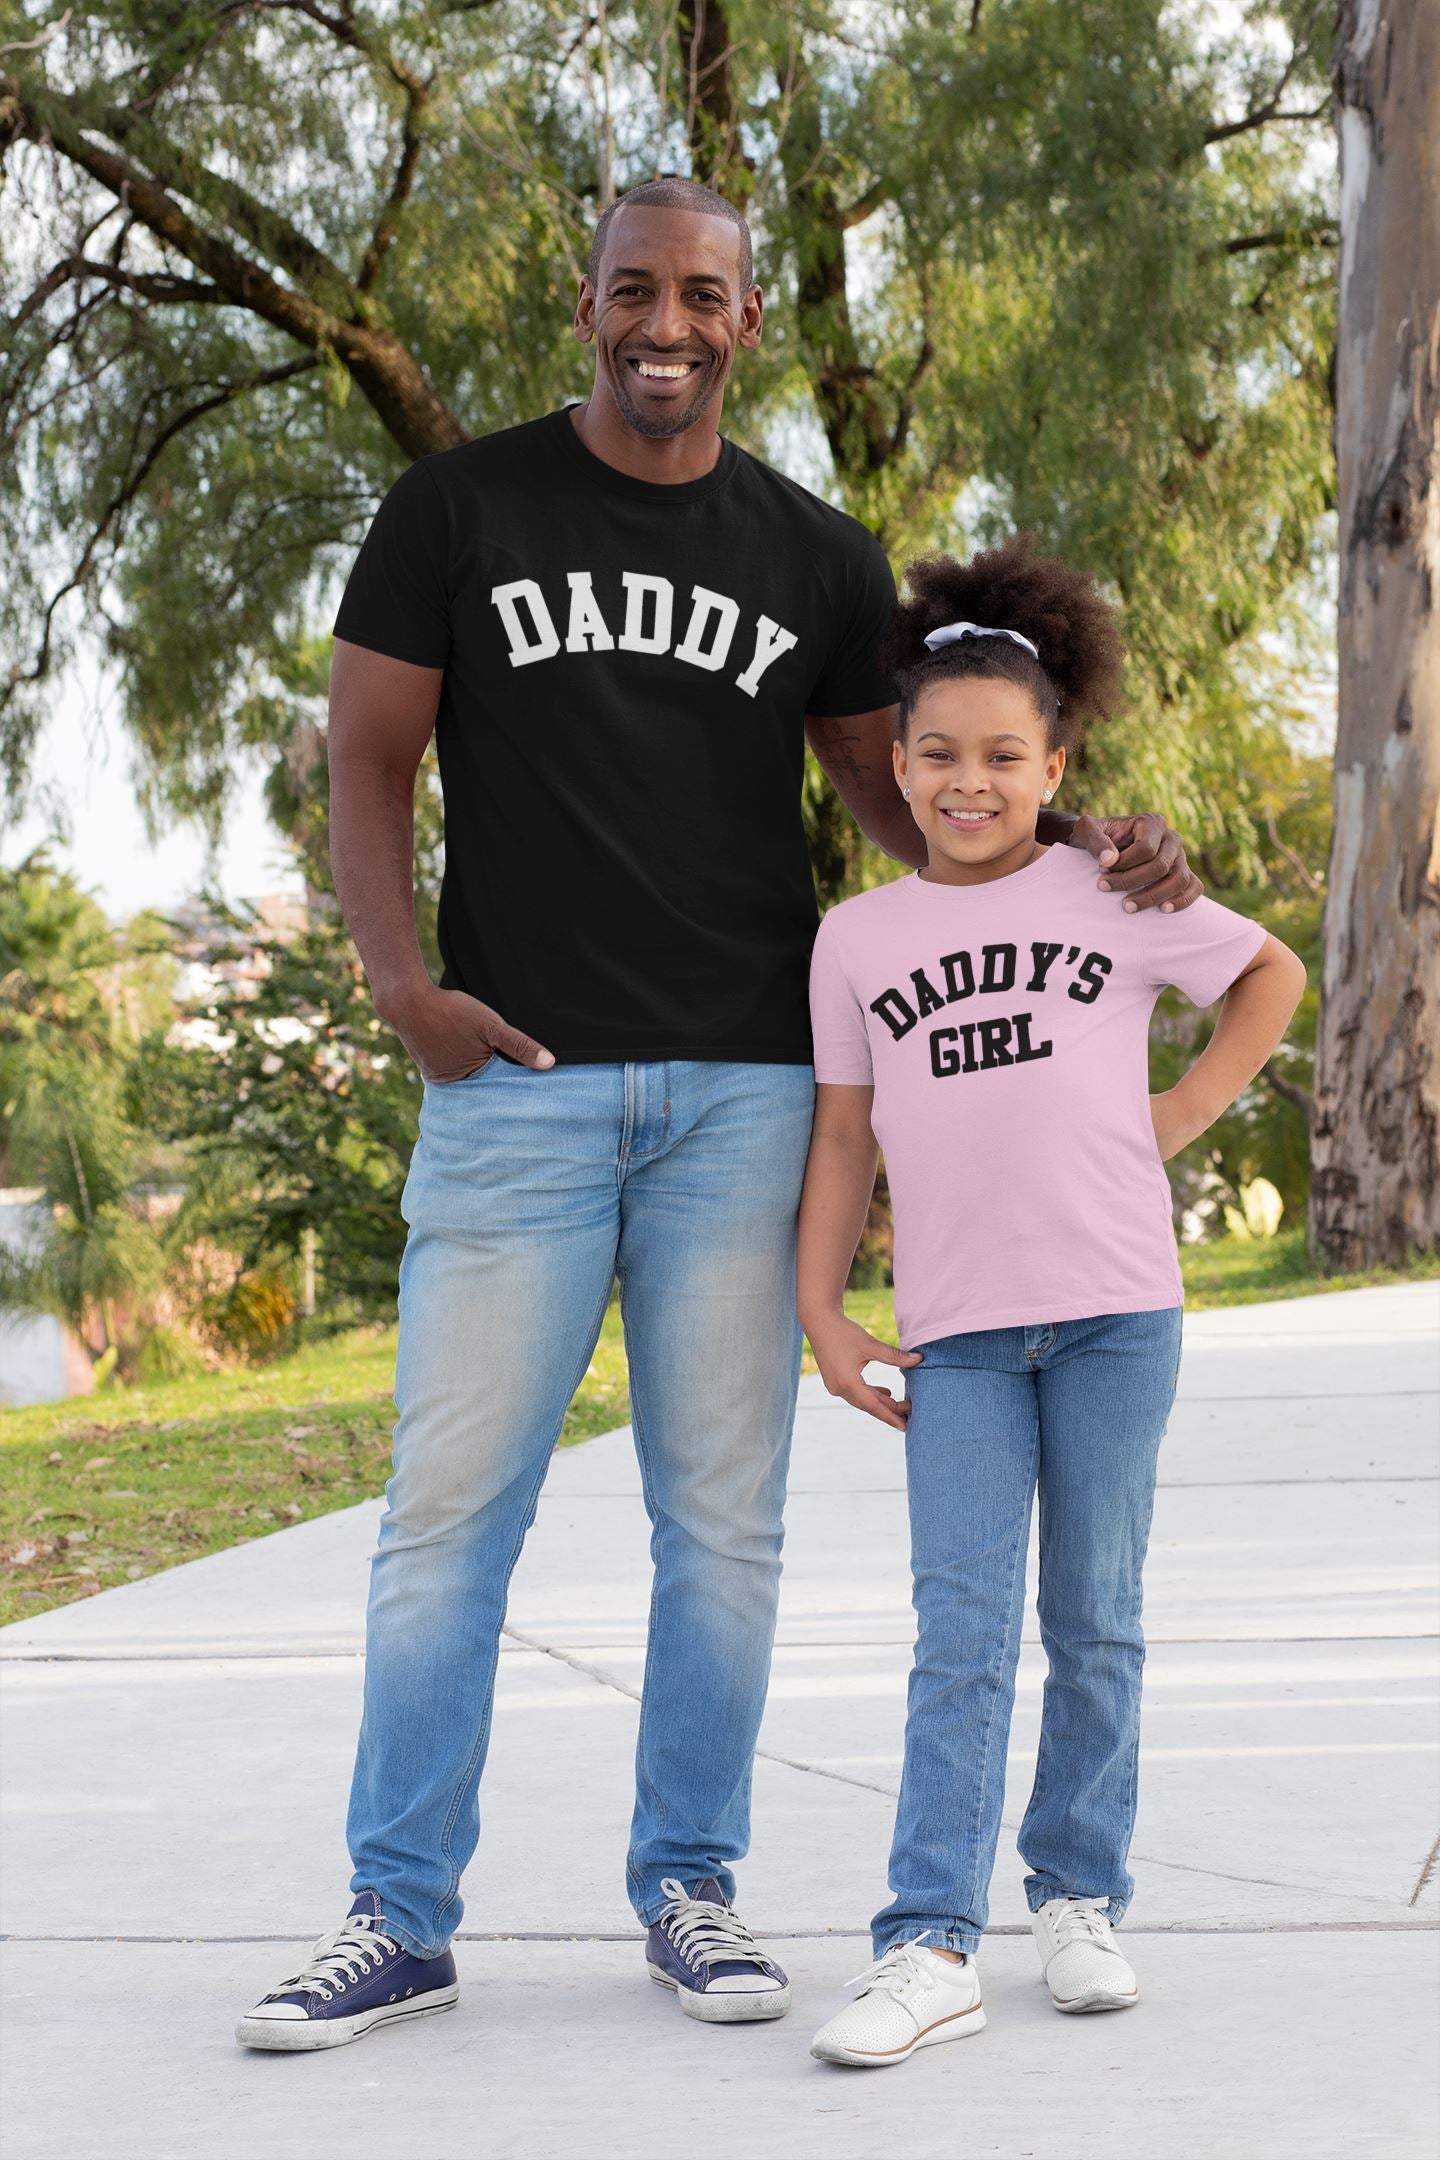 Daddy & Daddy's Girl Tshirts